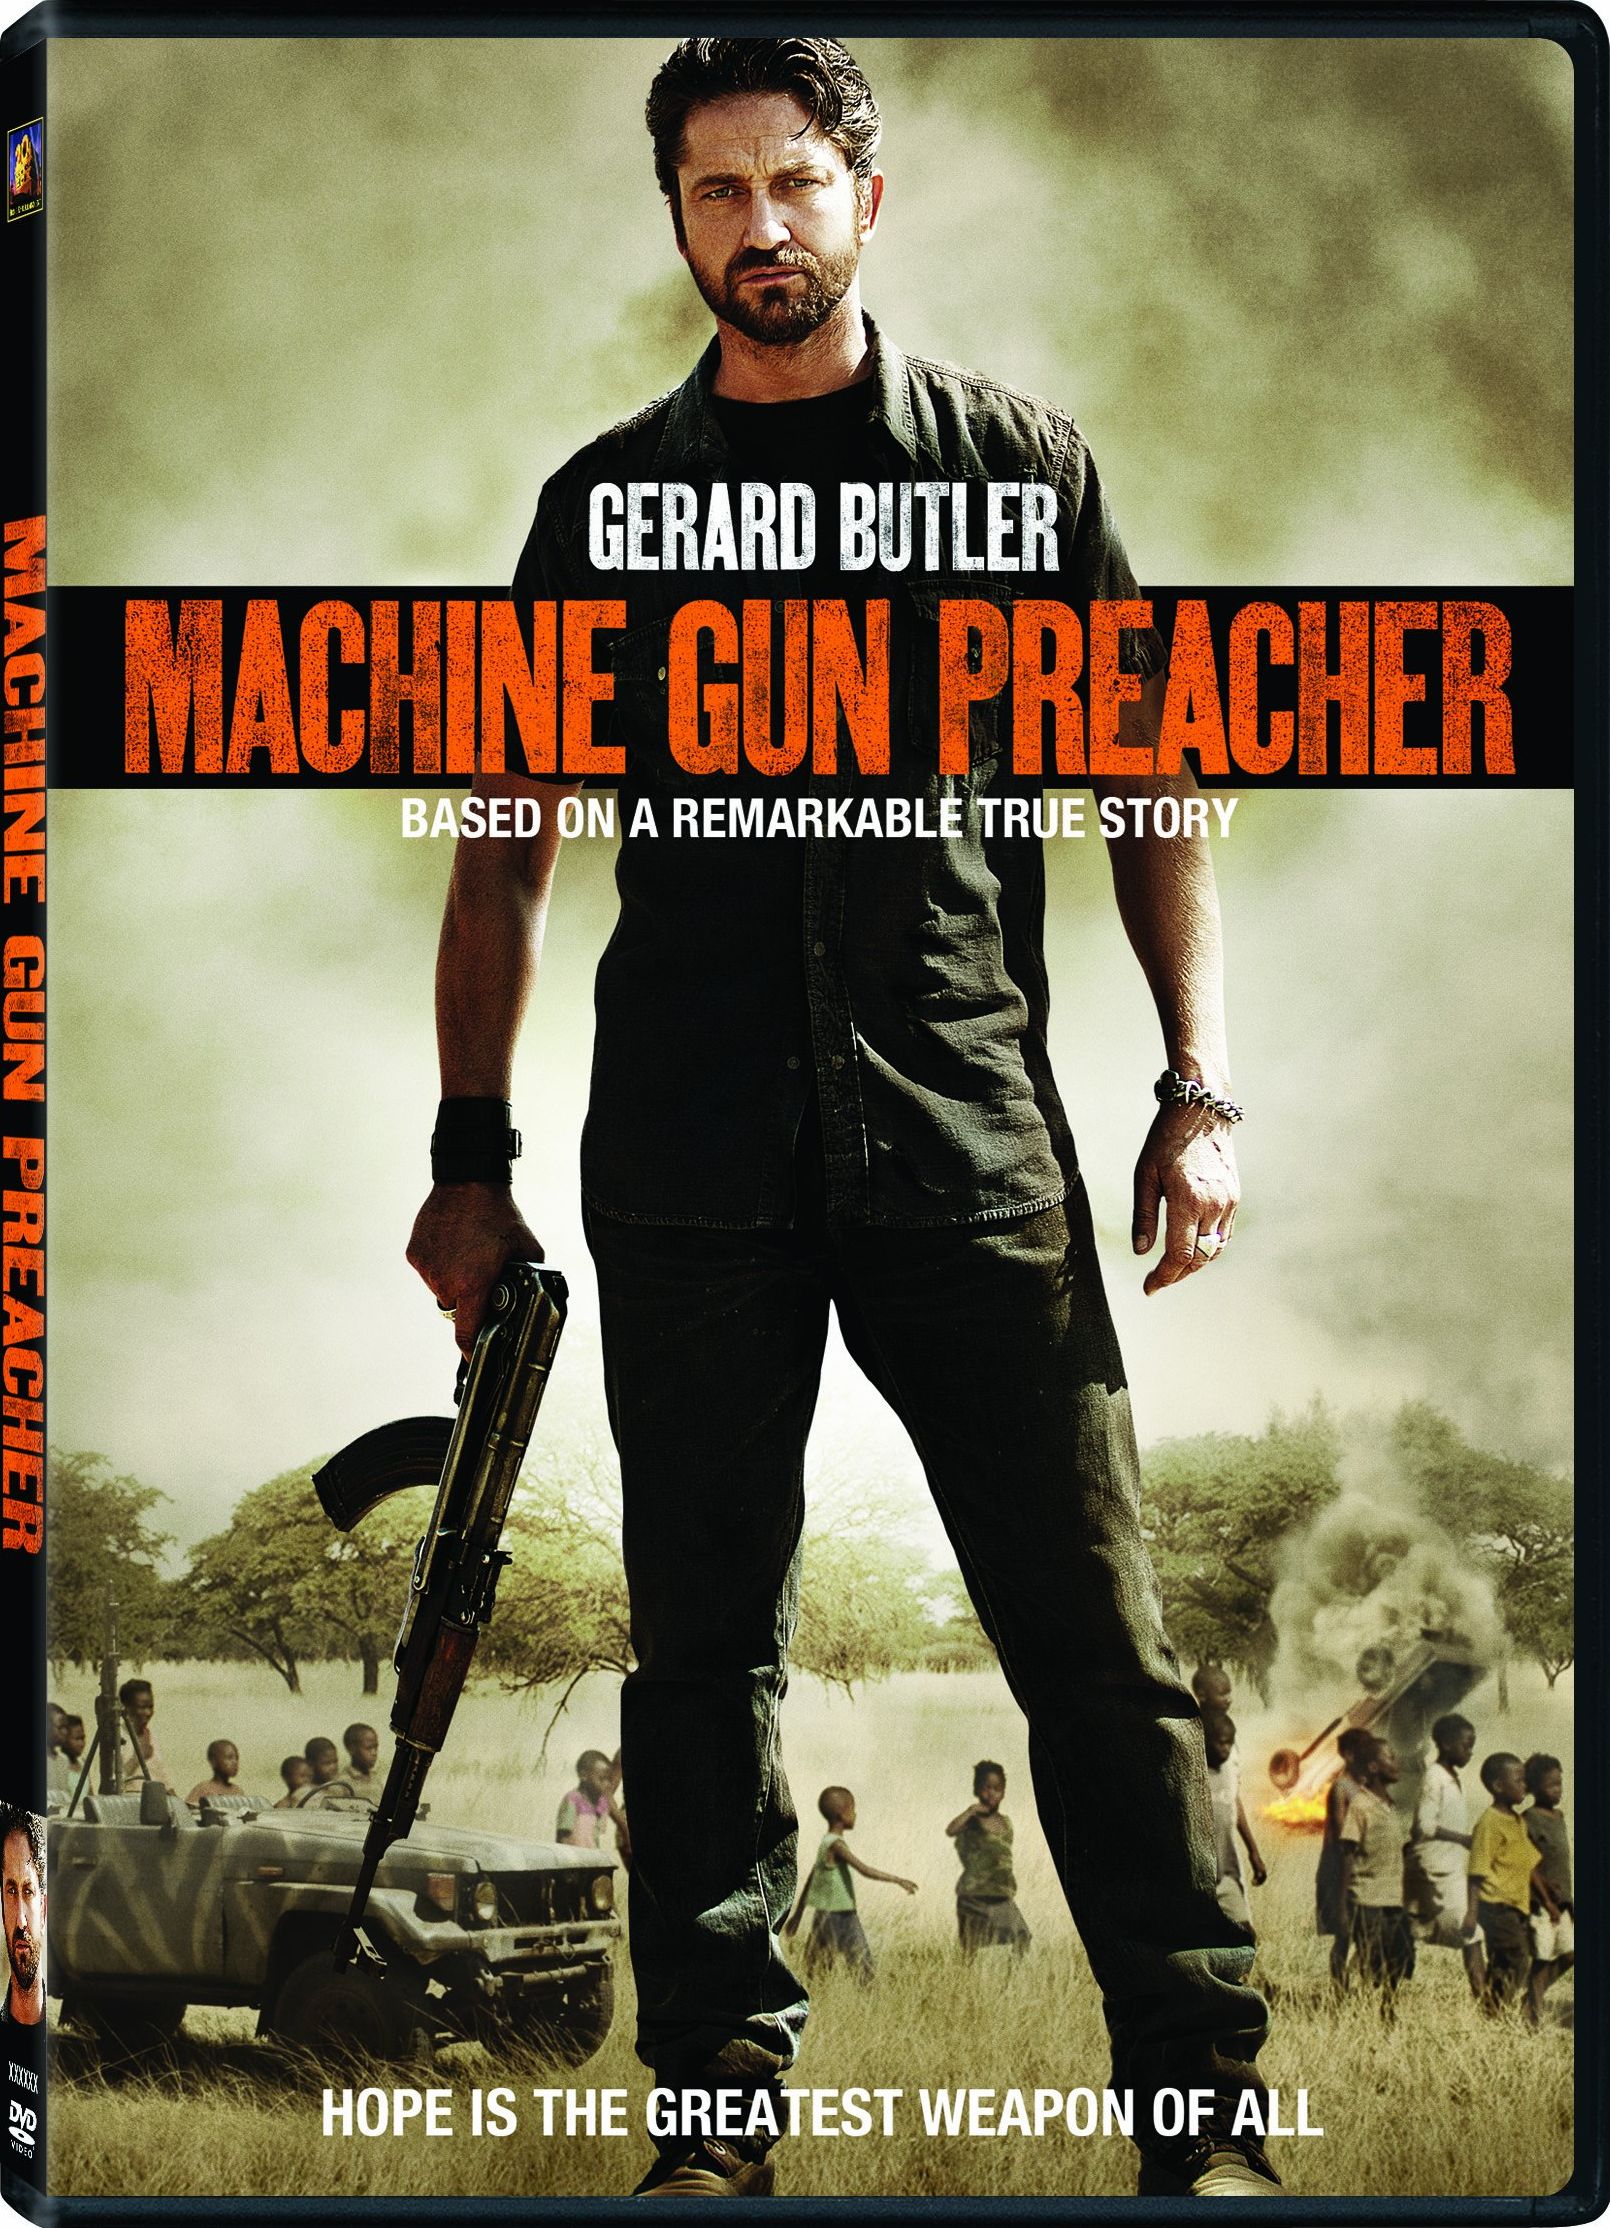 Machine Gun Preacher Backgrounds on Wallpapers Vista